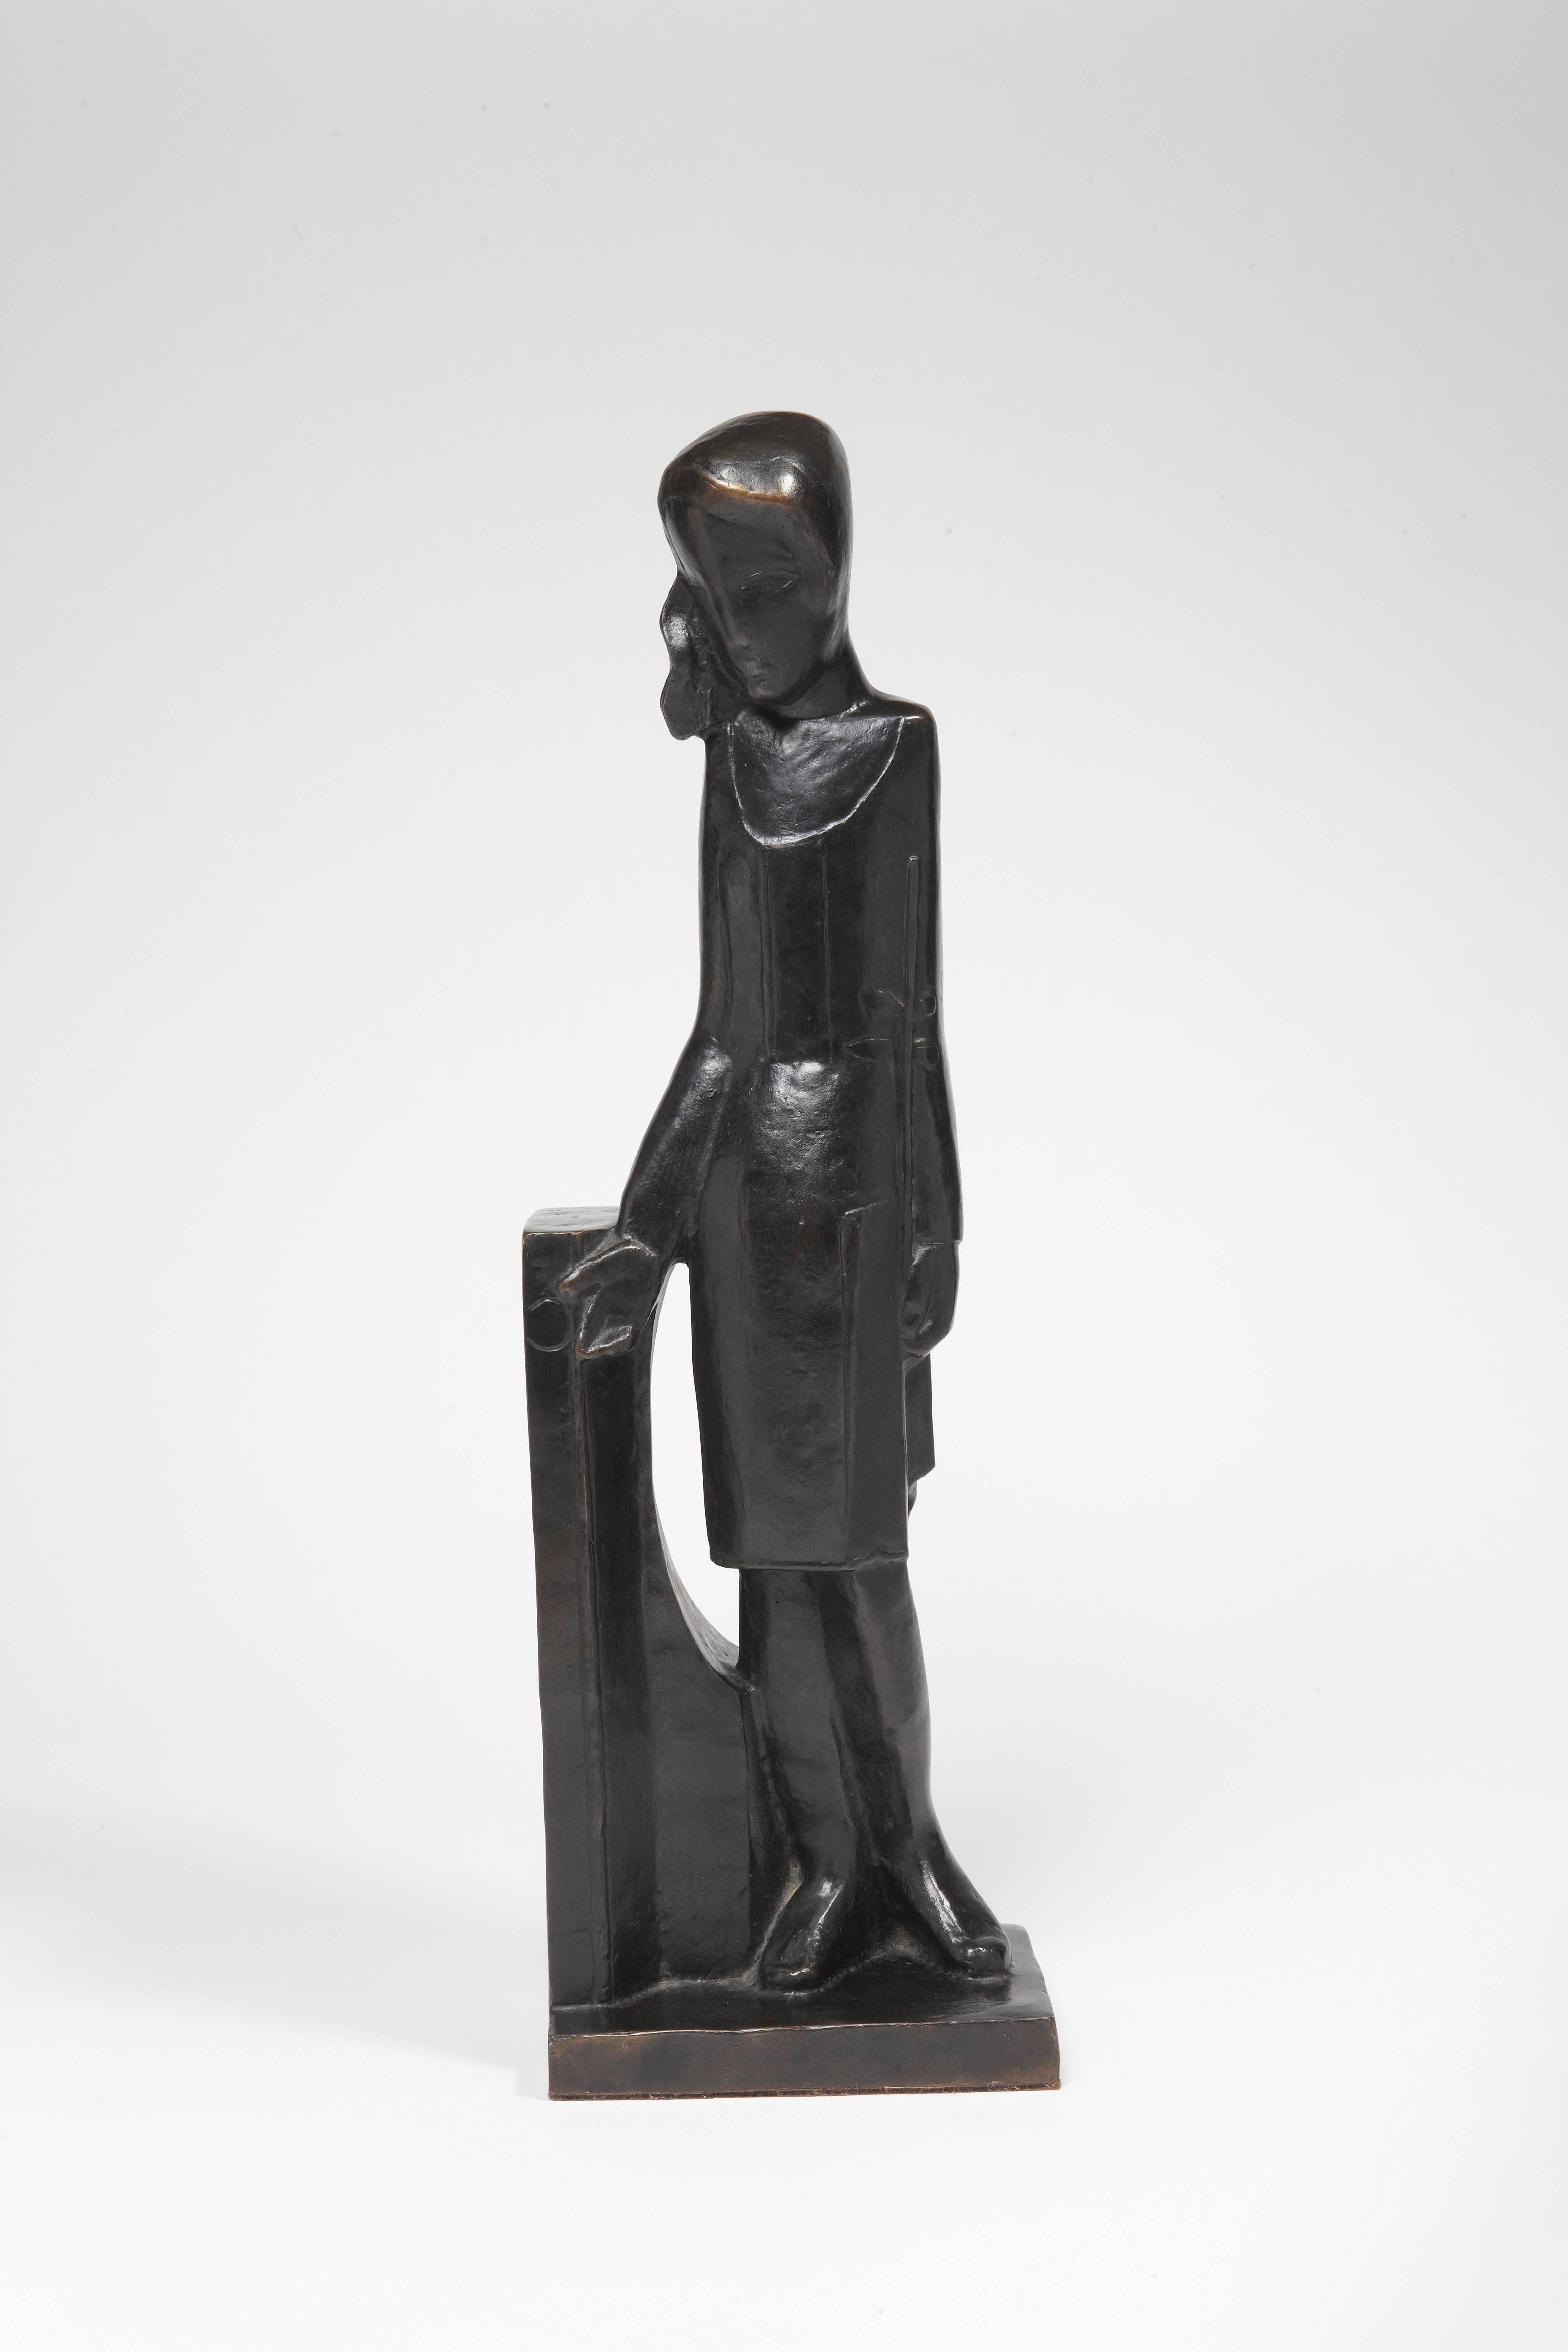 Sculpture en bronze patiné noir
Signé et numéroté 3/8. Estampillé du cachet de la fonderie Blanchet et marqué AC (Atelier Csaky).
Le modèle de 1926, la fonte actuelle est une édition postmoderne de la fonderie Blanchet.